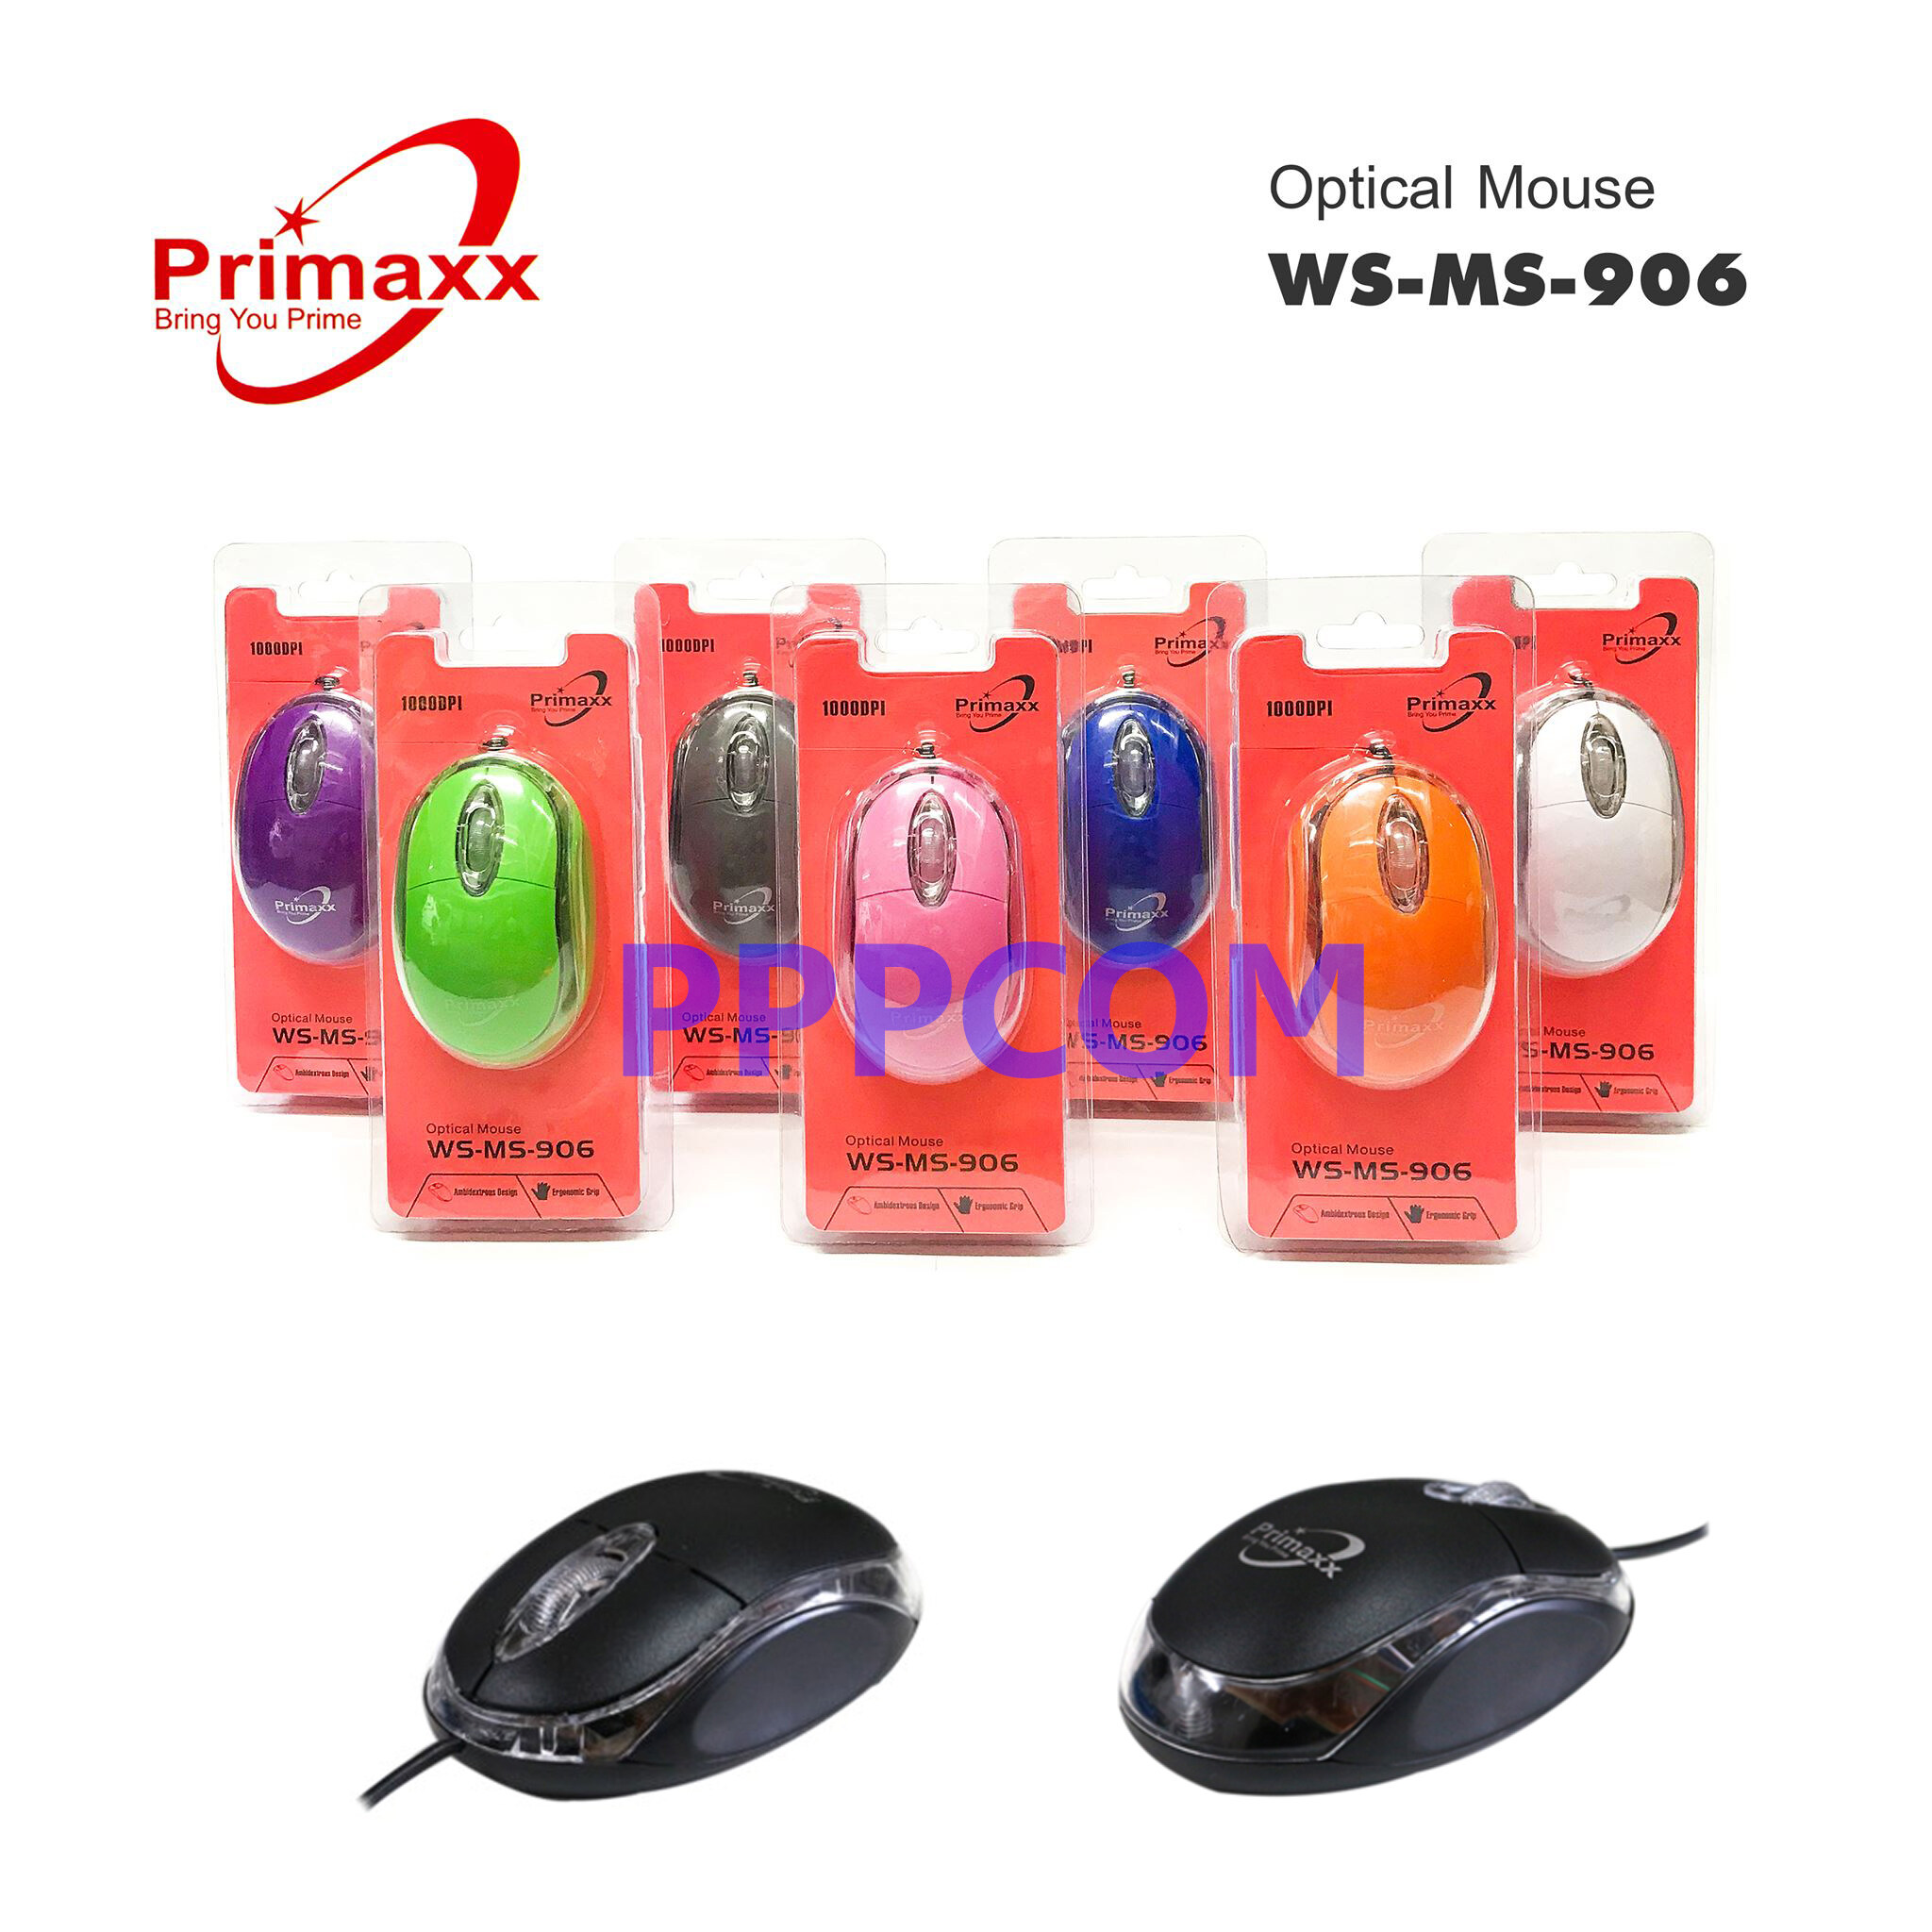 เม้าส์ Mouse USB PRIMAXX WS-MS-906 ราคาประหยัด มีหลากหลายสี